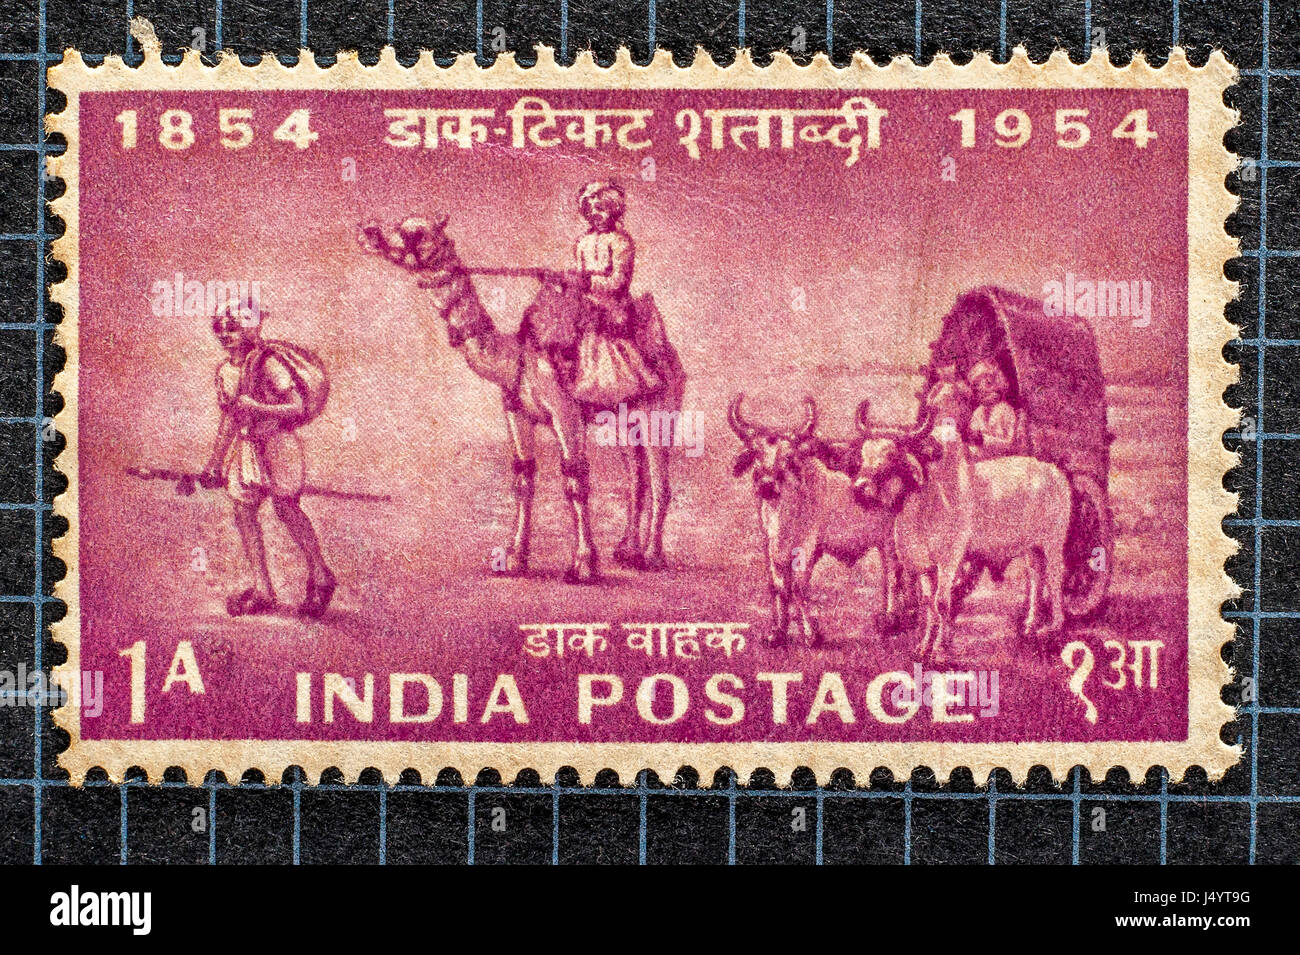 Francobollo centenario indiano d'epoca una anna d'India affrancata dal 1854 al 1954, con consegna a piedi, cammello e carretto. Foto Stock